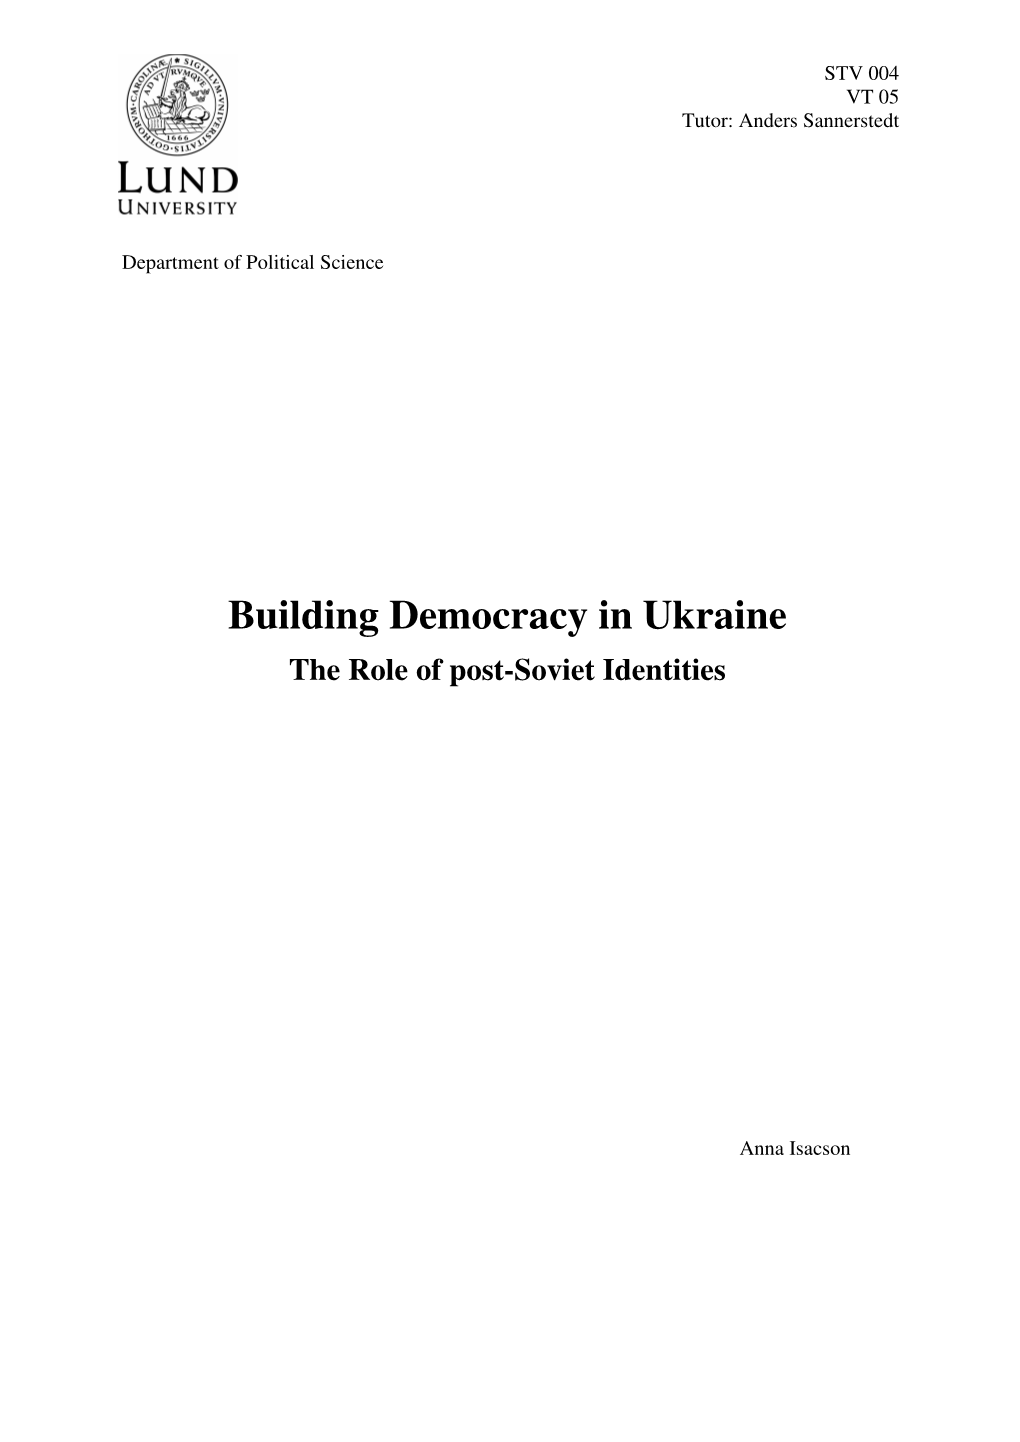 Building Democracy in Ukraine